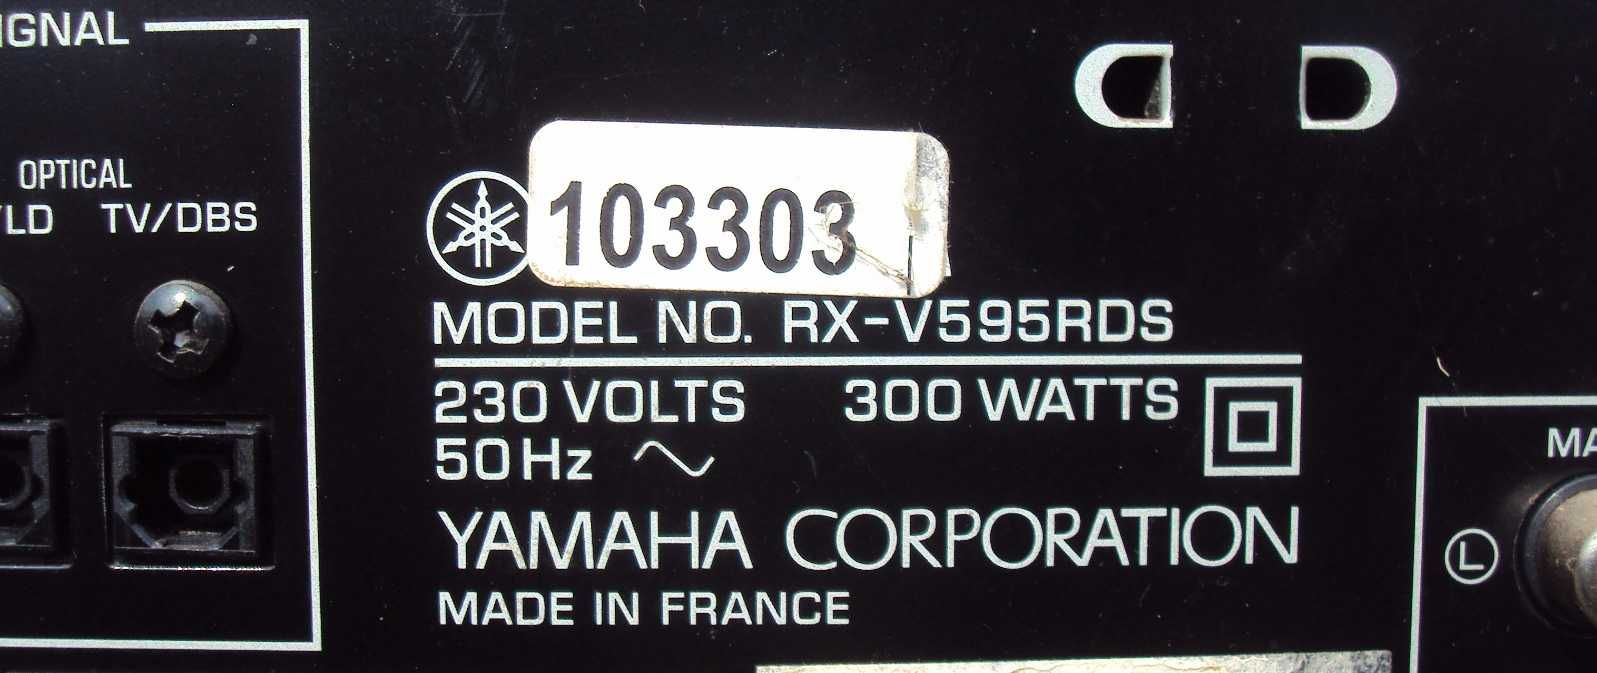 Стерео ресивер YAMAHA RX-V595RDS и DVD YAMAHA S550 комплект